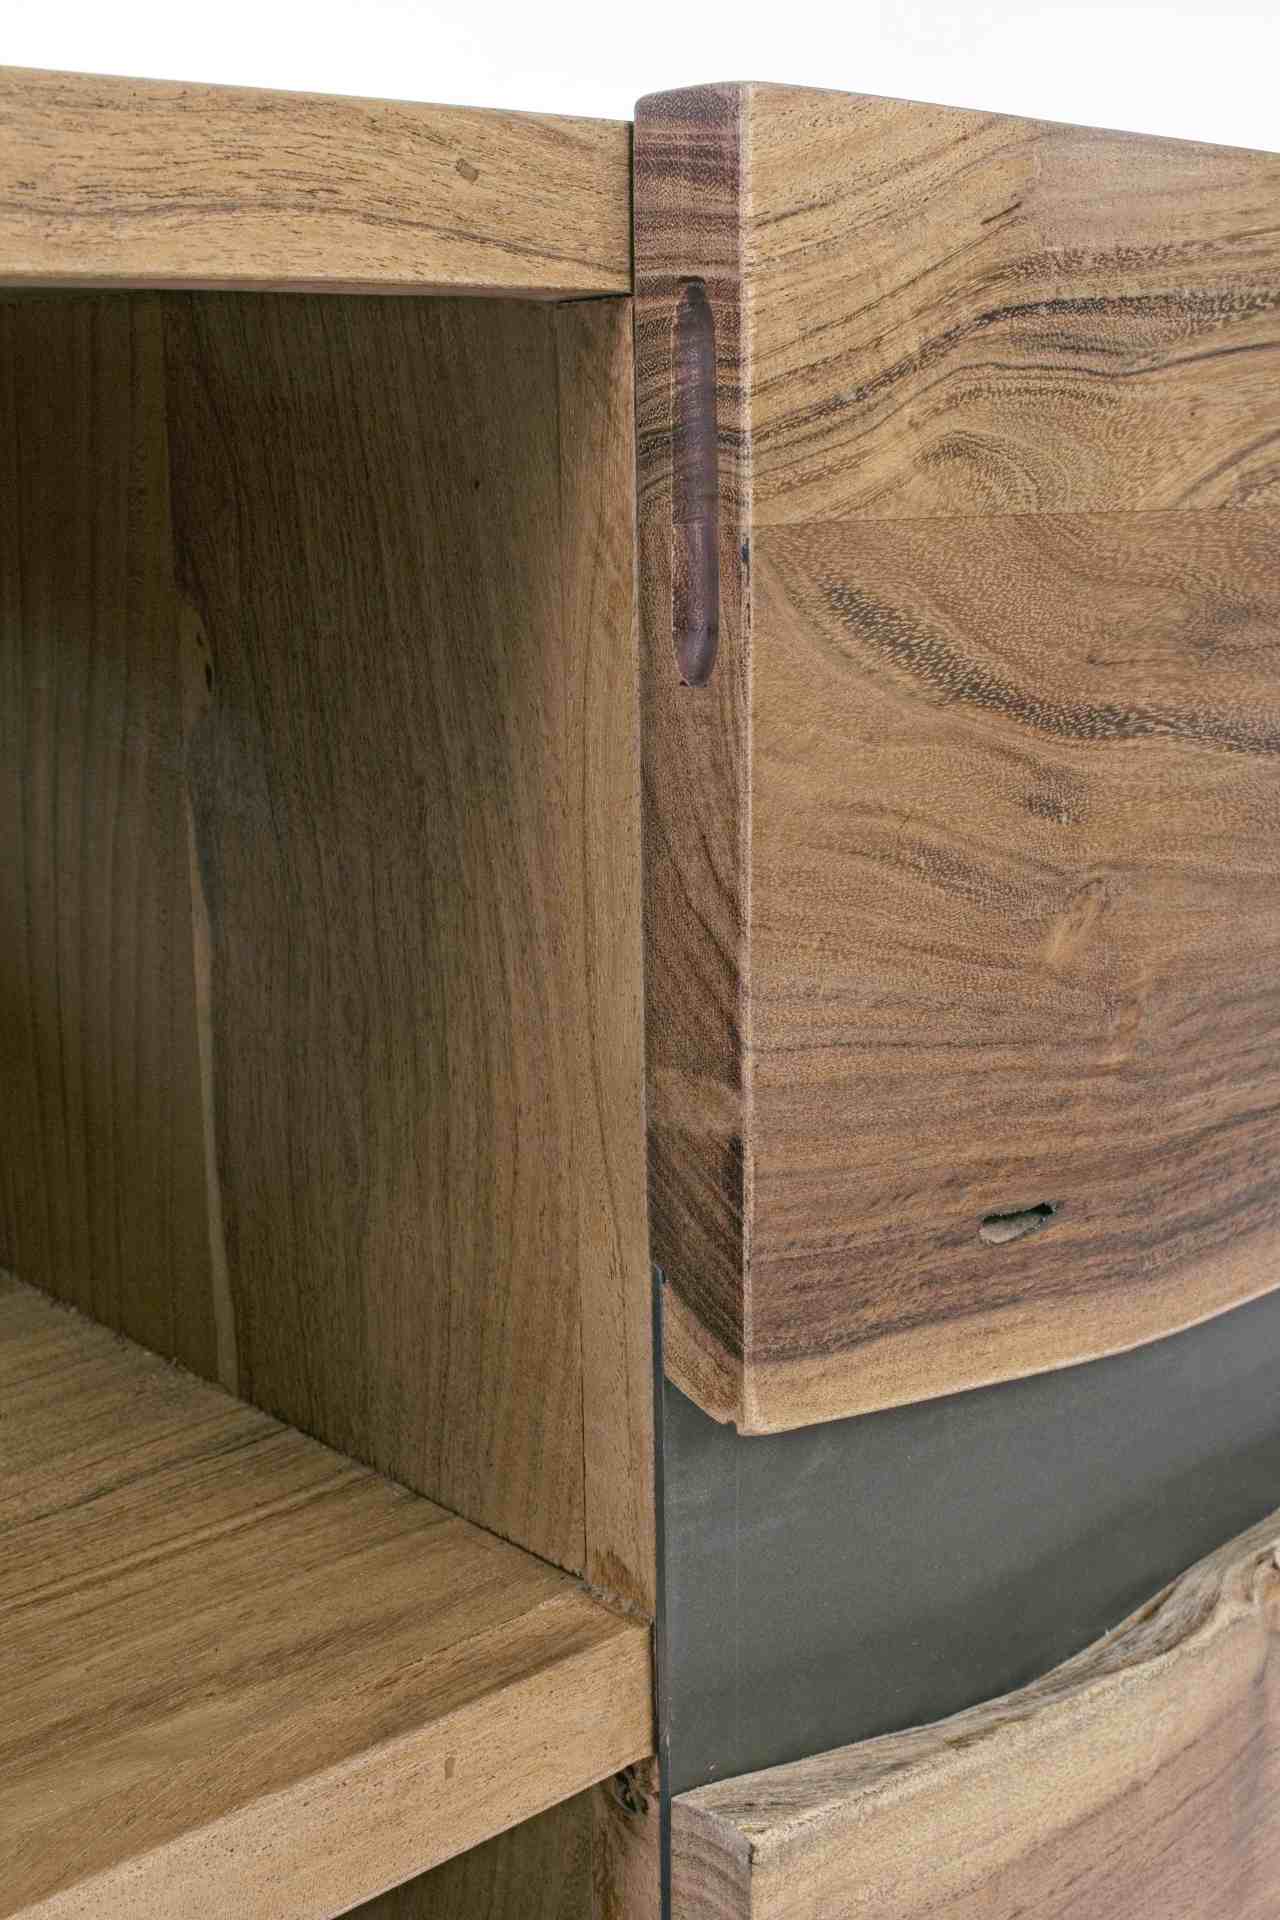 Das TV Board Aron überzeugt mit seinem modernen Design. Gefertigt wurde es aus Akazienholz, welches einen natürlichen Farbton besitzt. Das Gestell ist aus Metall und hat einen schwarze Farbe. Das TV Board verfügt über zwei Türen und zwei Fächer. Die Breit